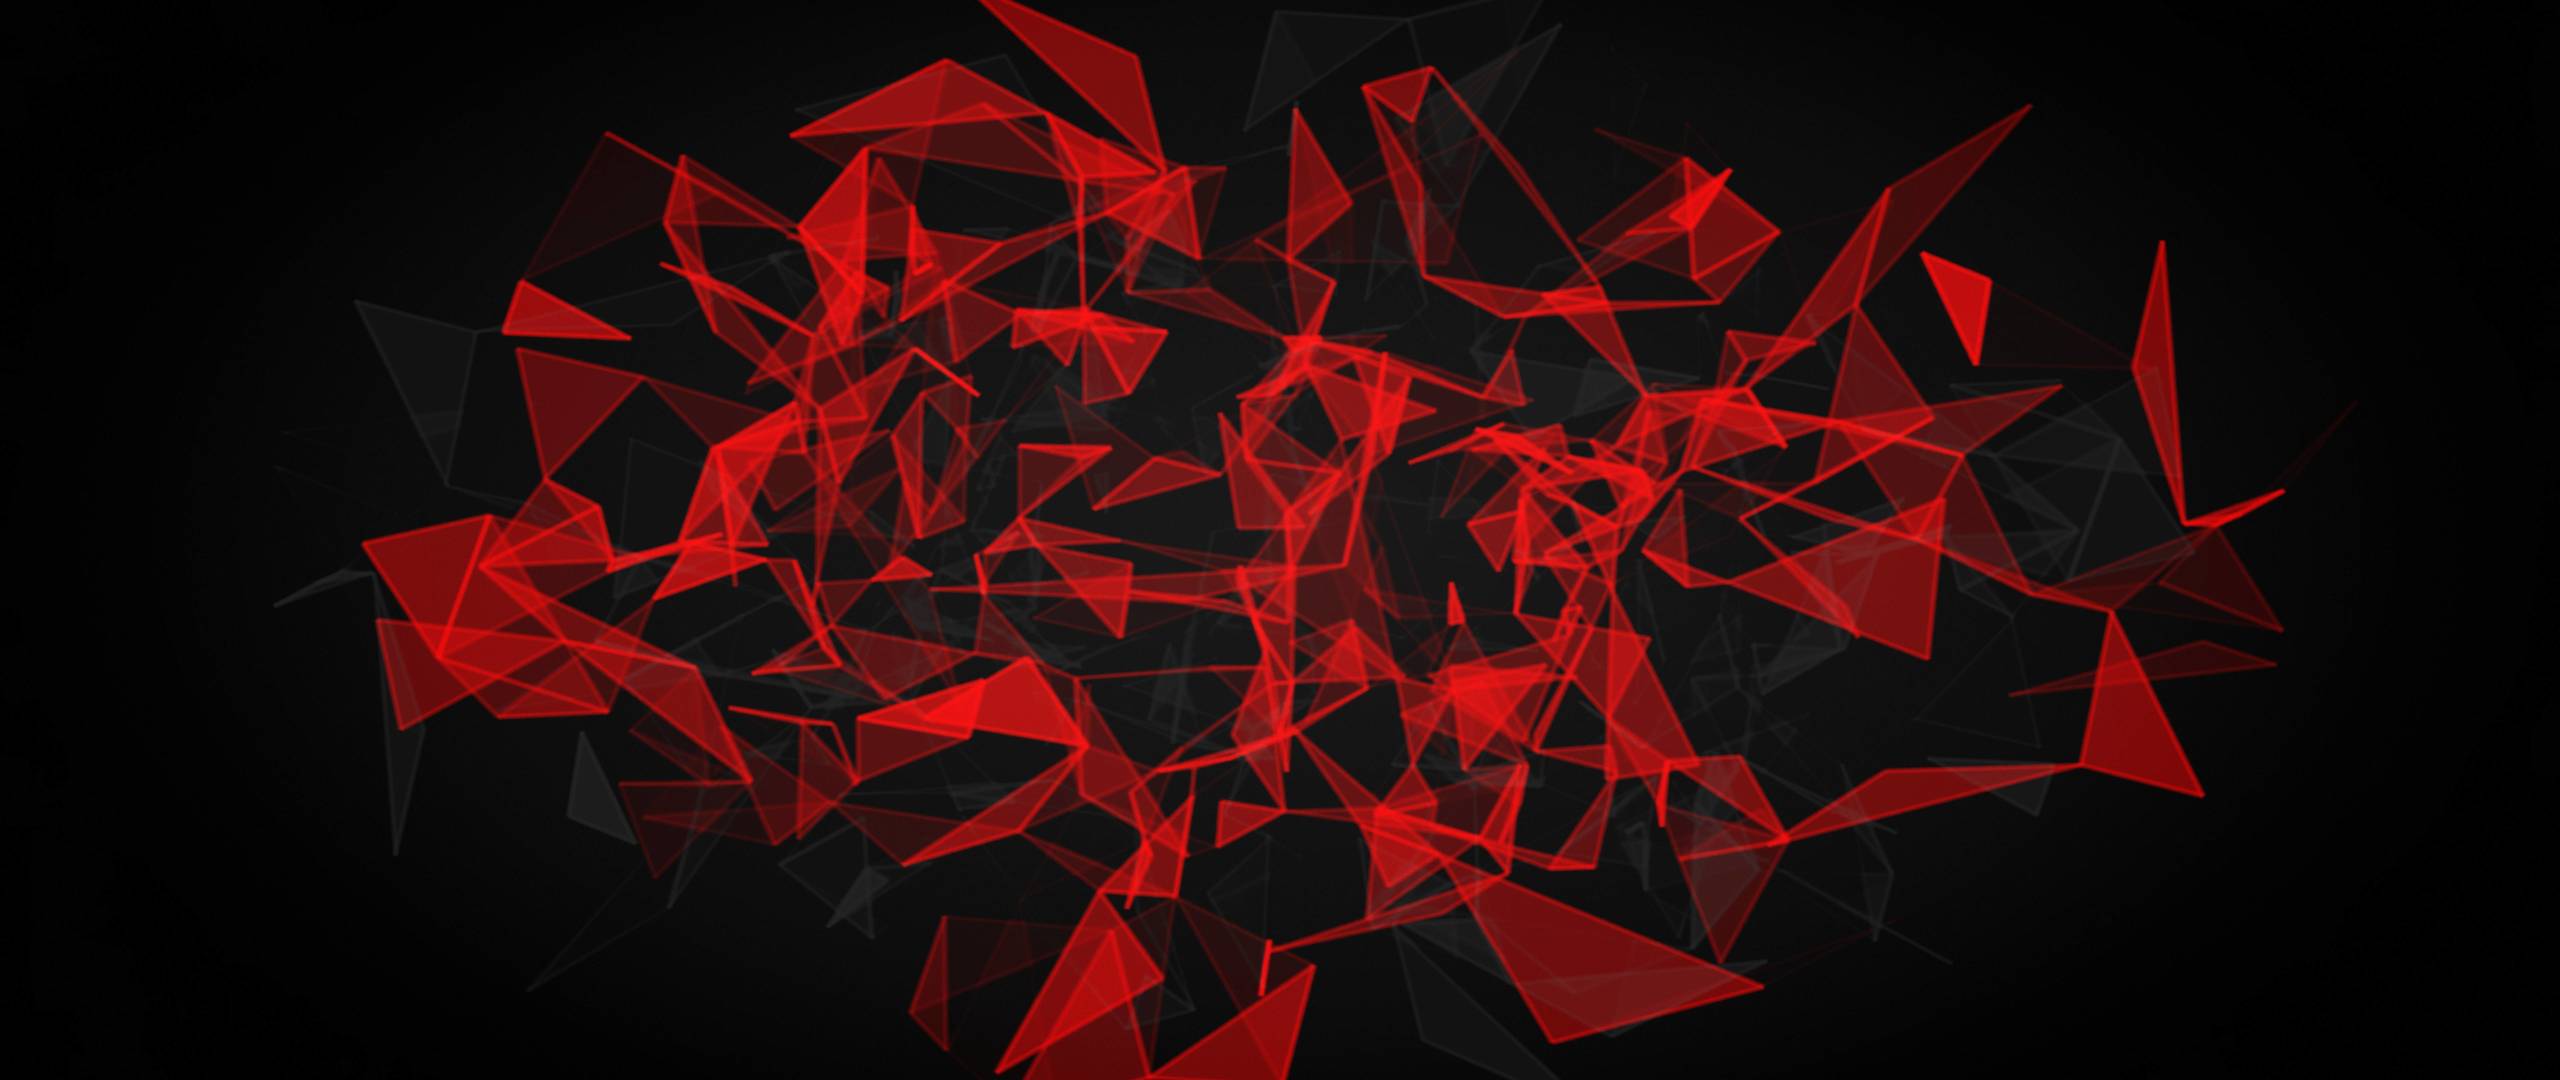 schwarze und rote tapete,rot,schwarz,muster,grafikdesign,design